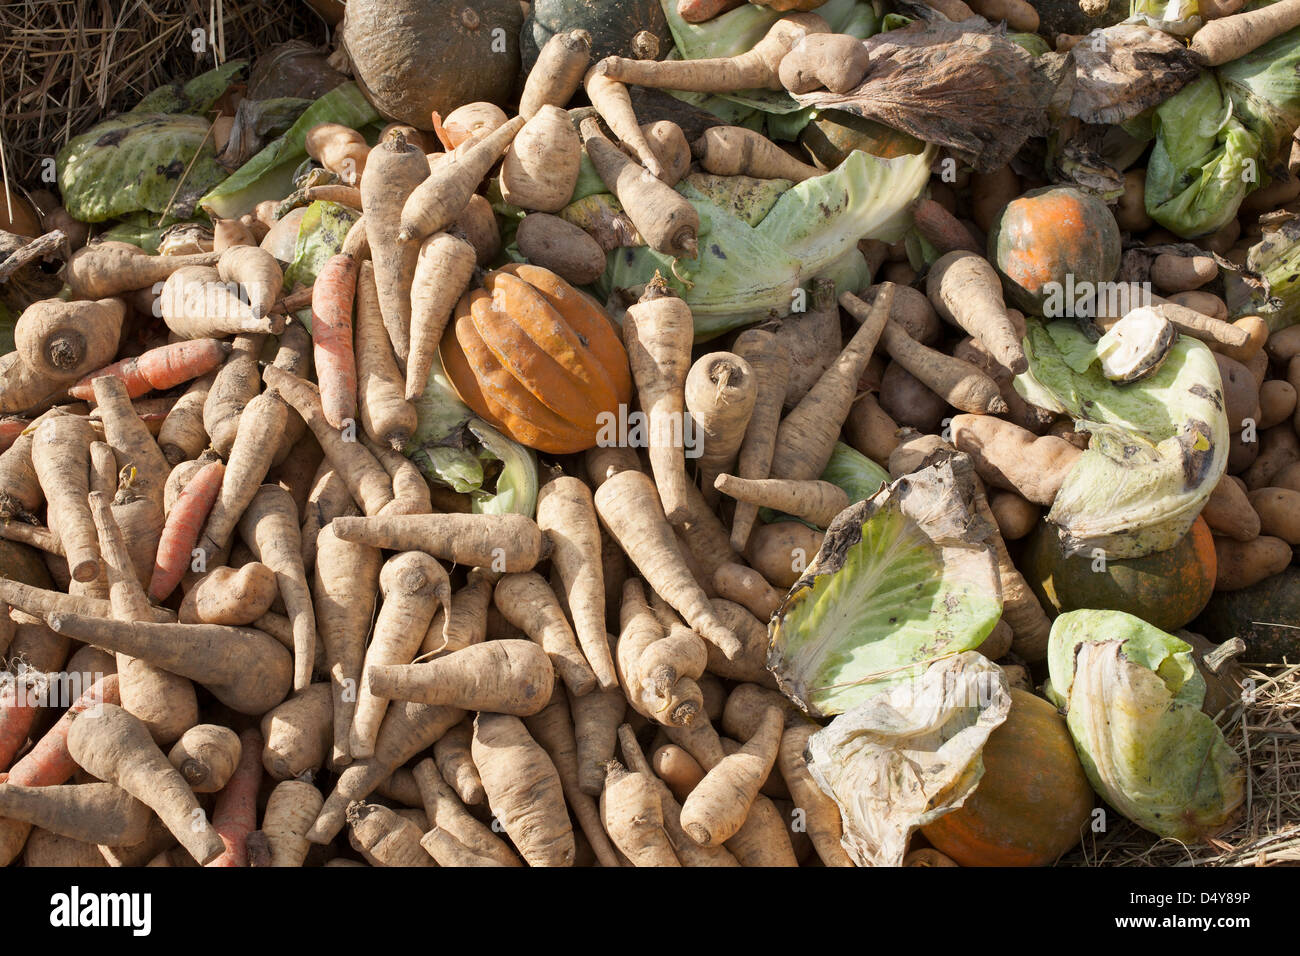 Community Supported Agriculture (CSA) Bauernhof verworfen hat beschädigt Gemüse in ein Kompost-Haufen. Stockfoto